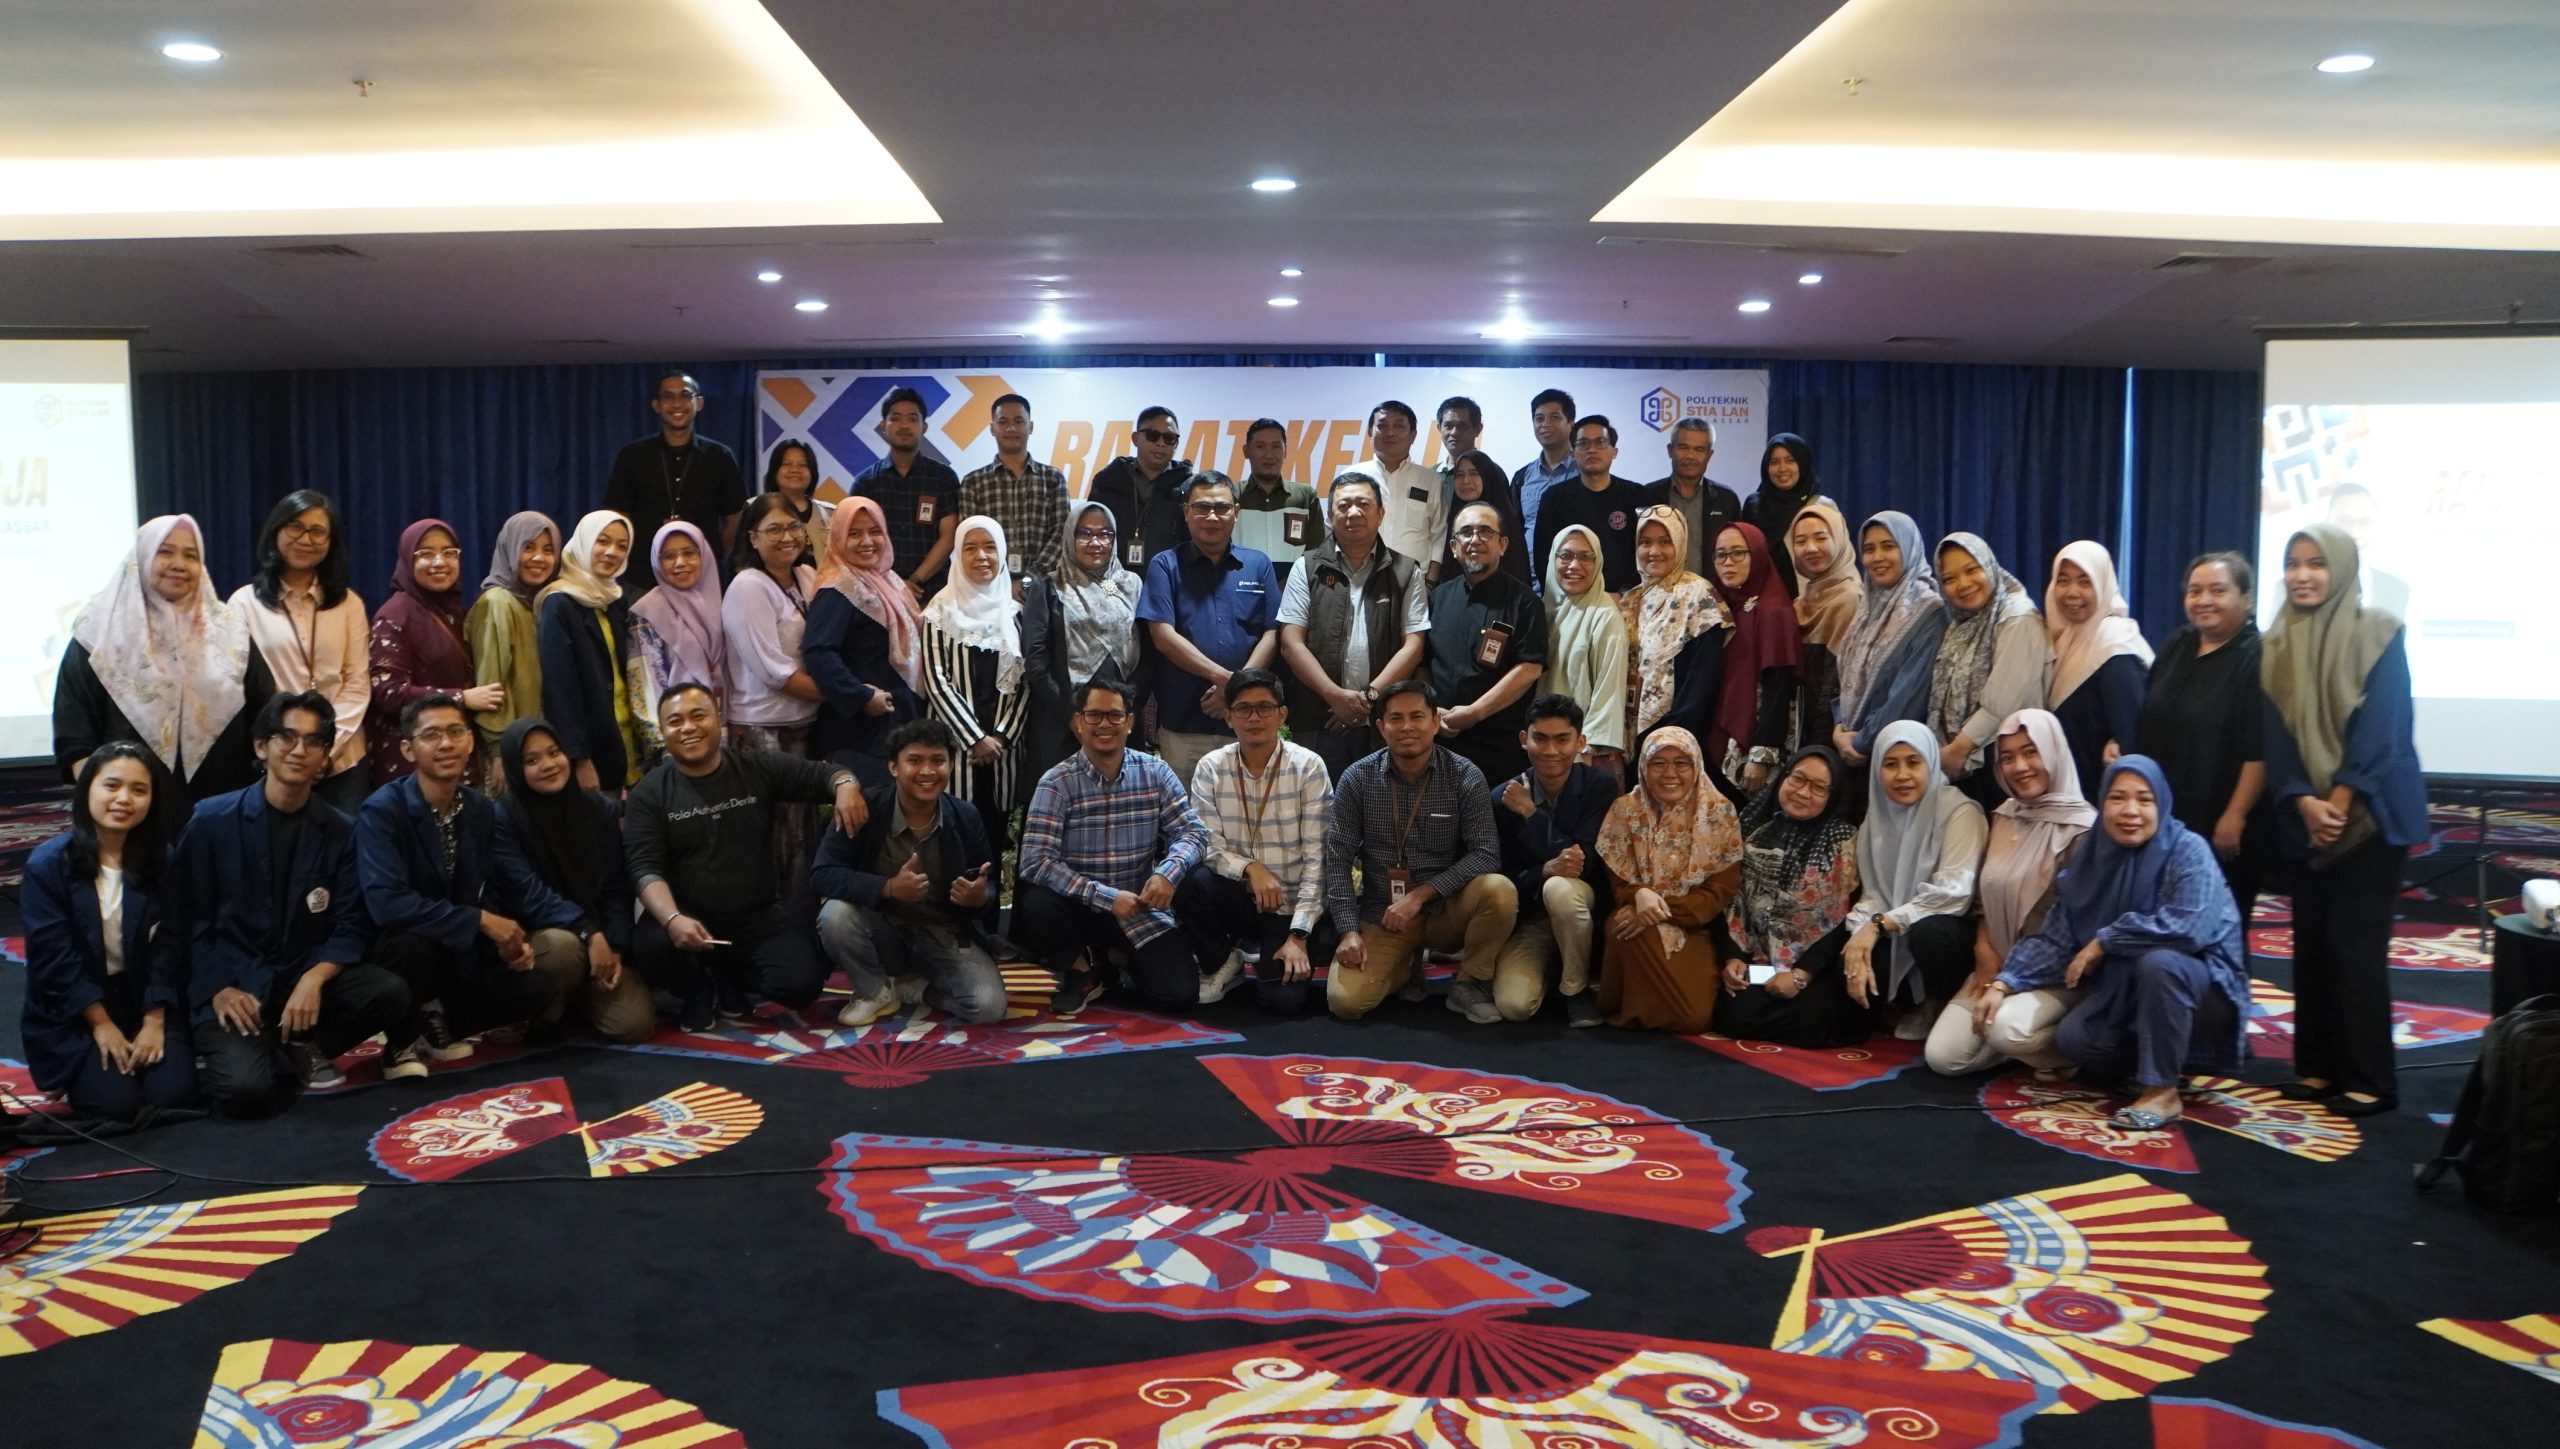 Rapat Kerja Politeknik STIA LAN Makassar Dorong Peningkatan Kualitas Sumber Daya Manusia, Didukung oleh Peran Aktif Perwakilan Organisasi Mahasiswa